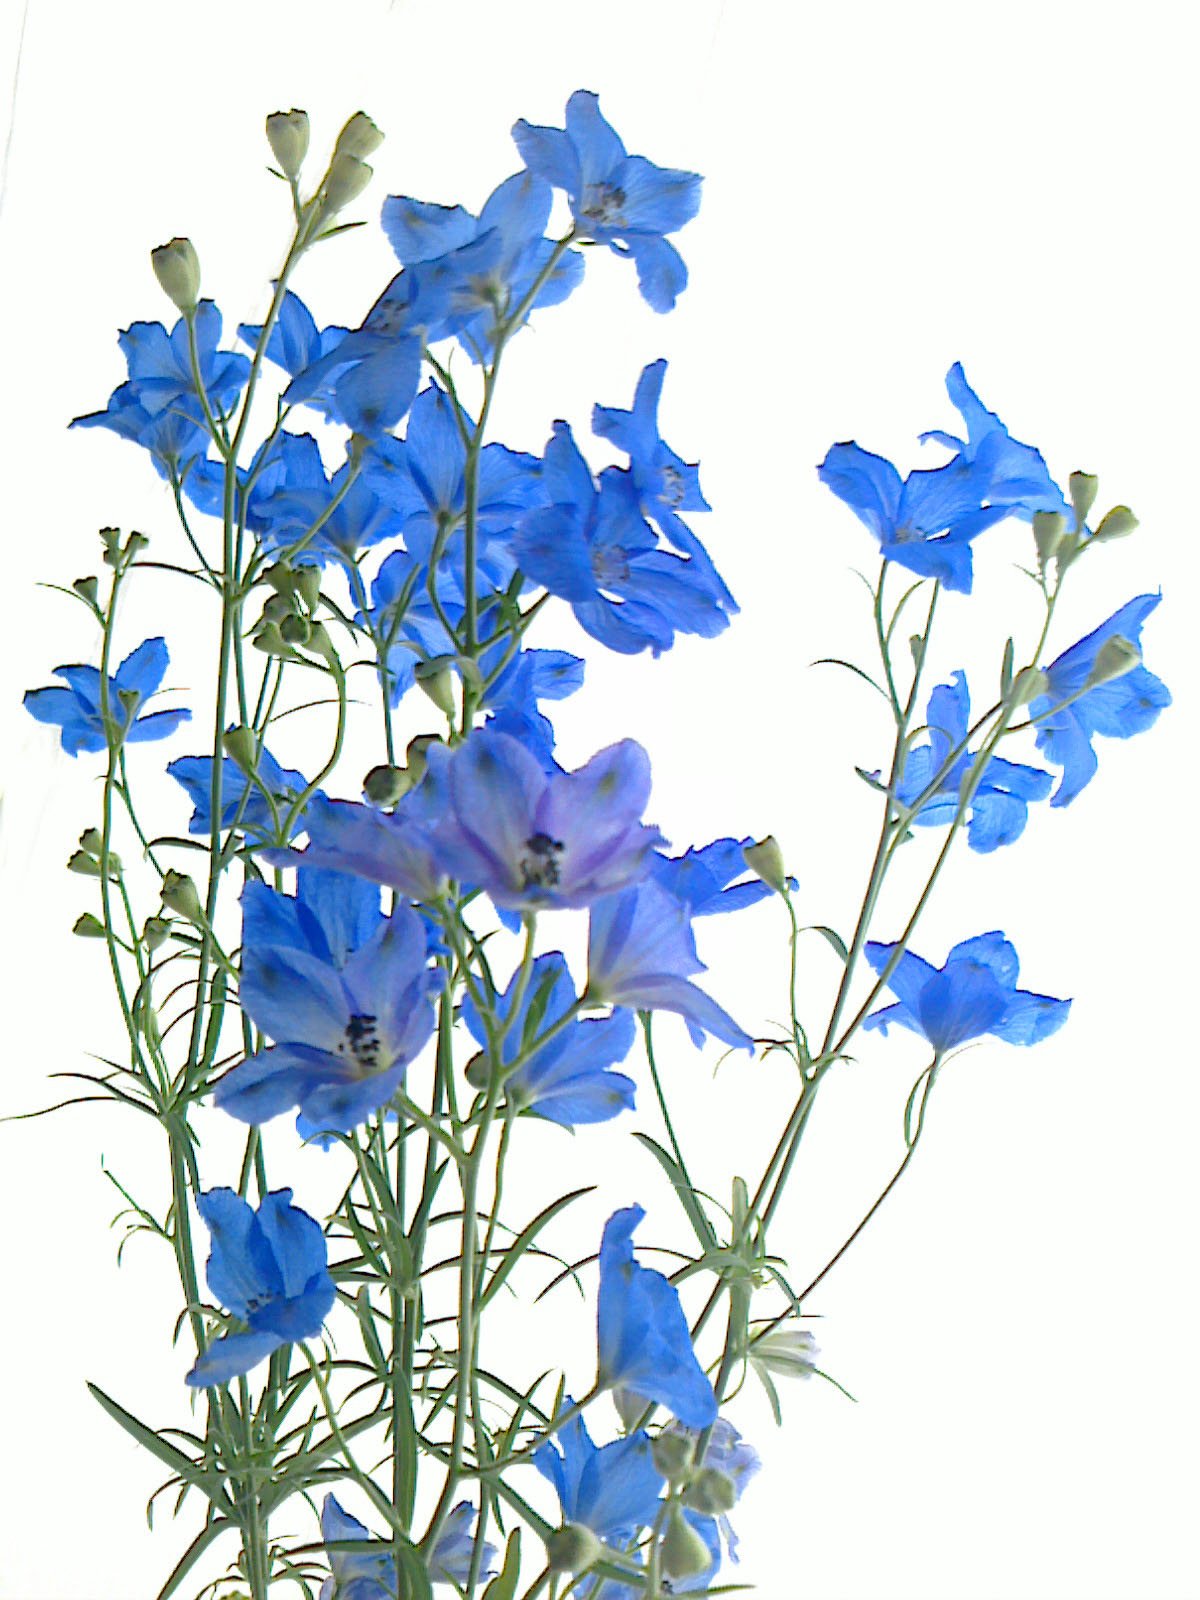 Uzivatel ハナラボノート Na Twitteru デルフィニウムの花言葉 清明 青い花の代表選手 つぼみがイルカの形に似ているので ギリシャ語の Delphinns が花名の由来 和名は 大飛燕草 おおひえんそう ツバメが飛ぶ姿